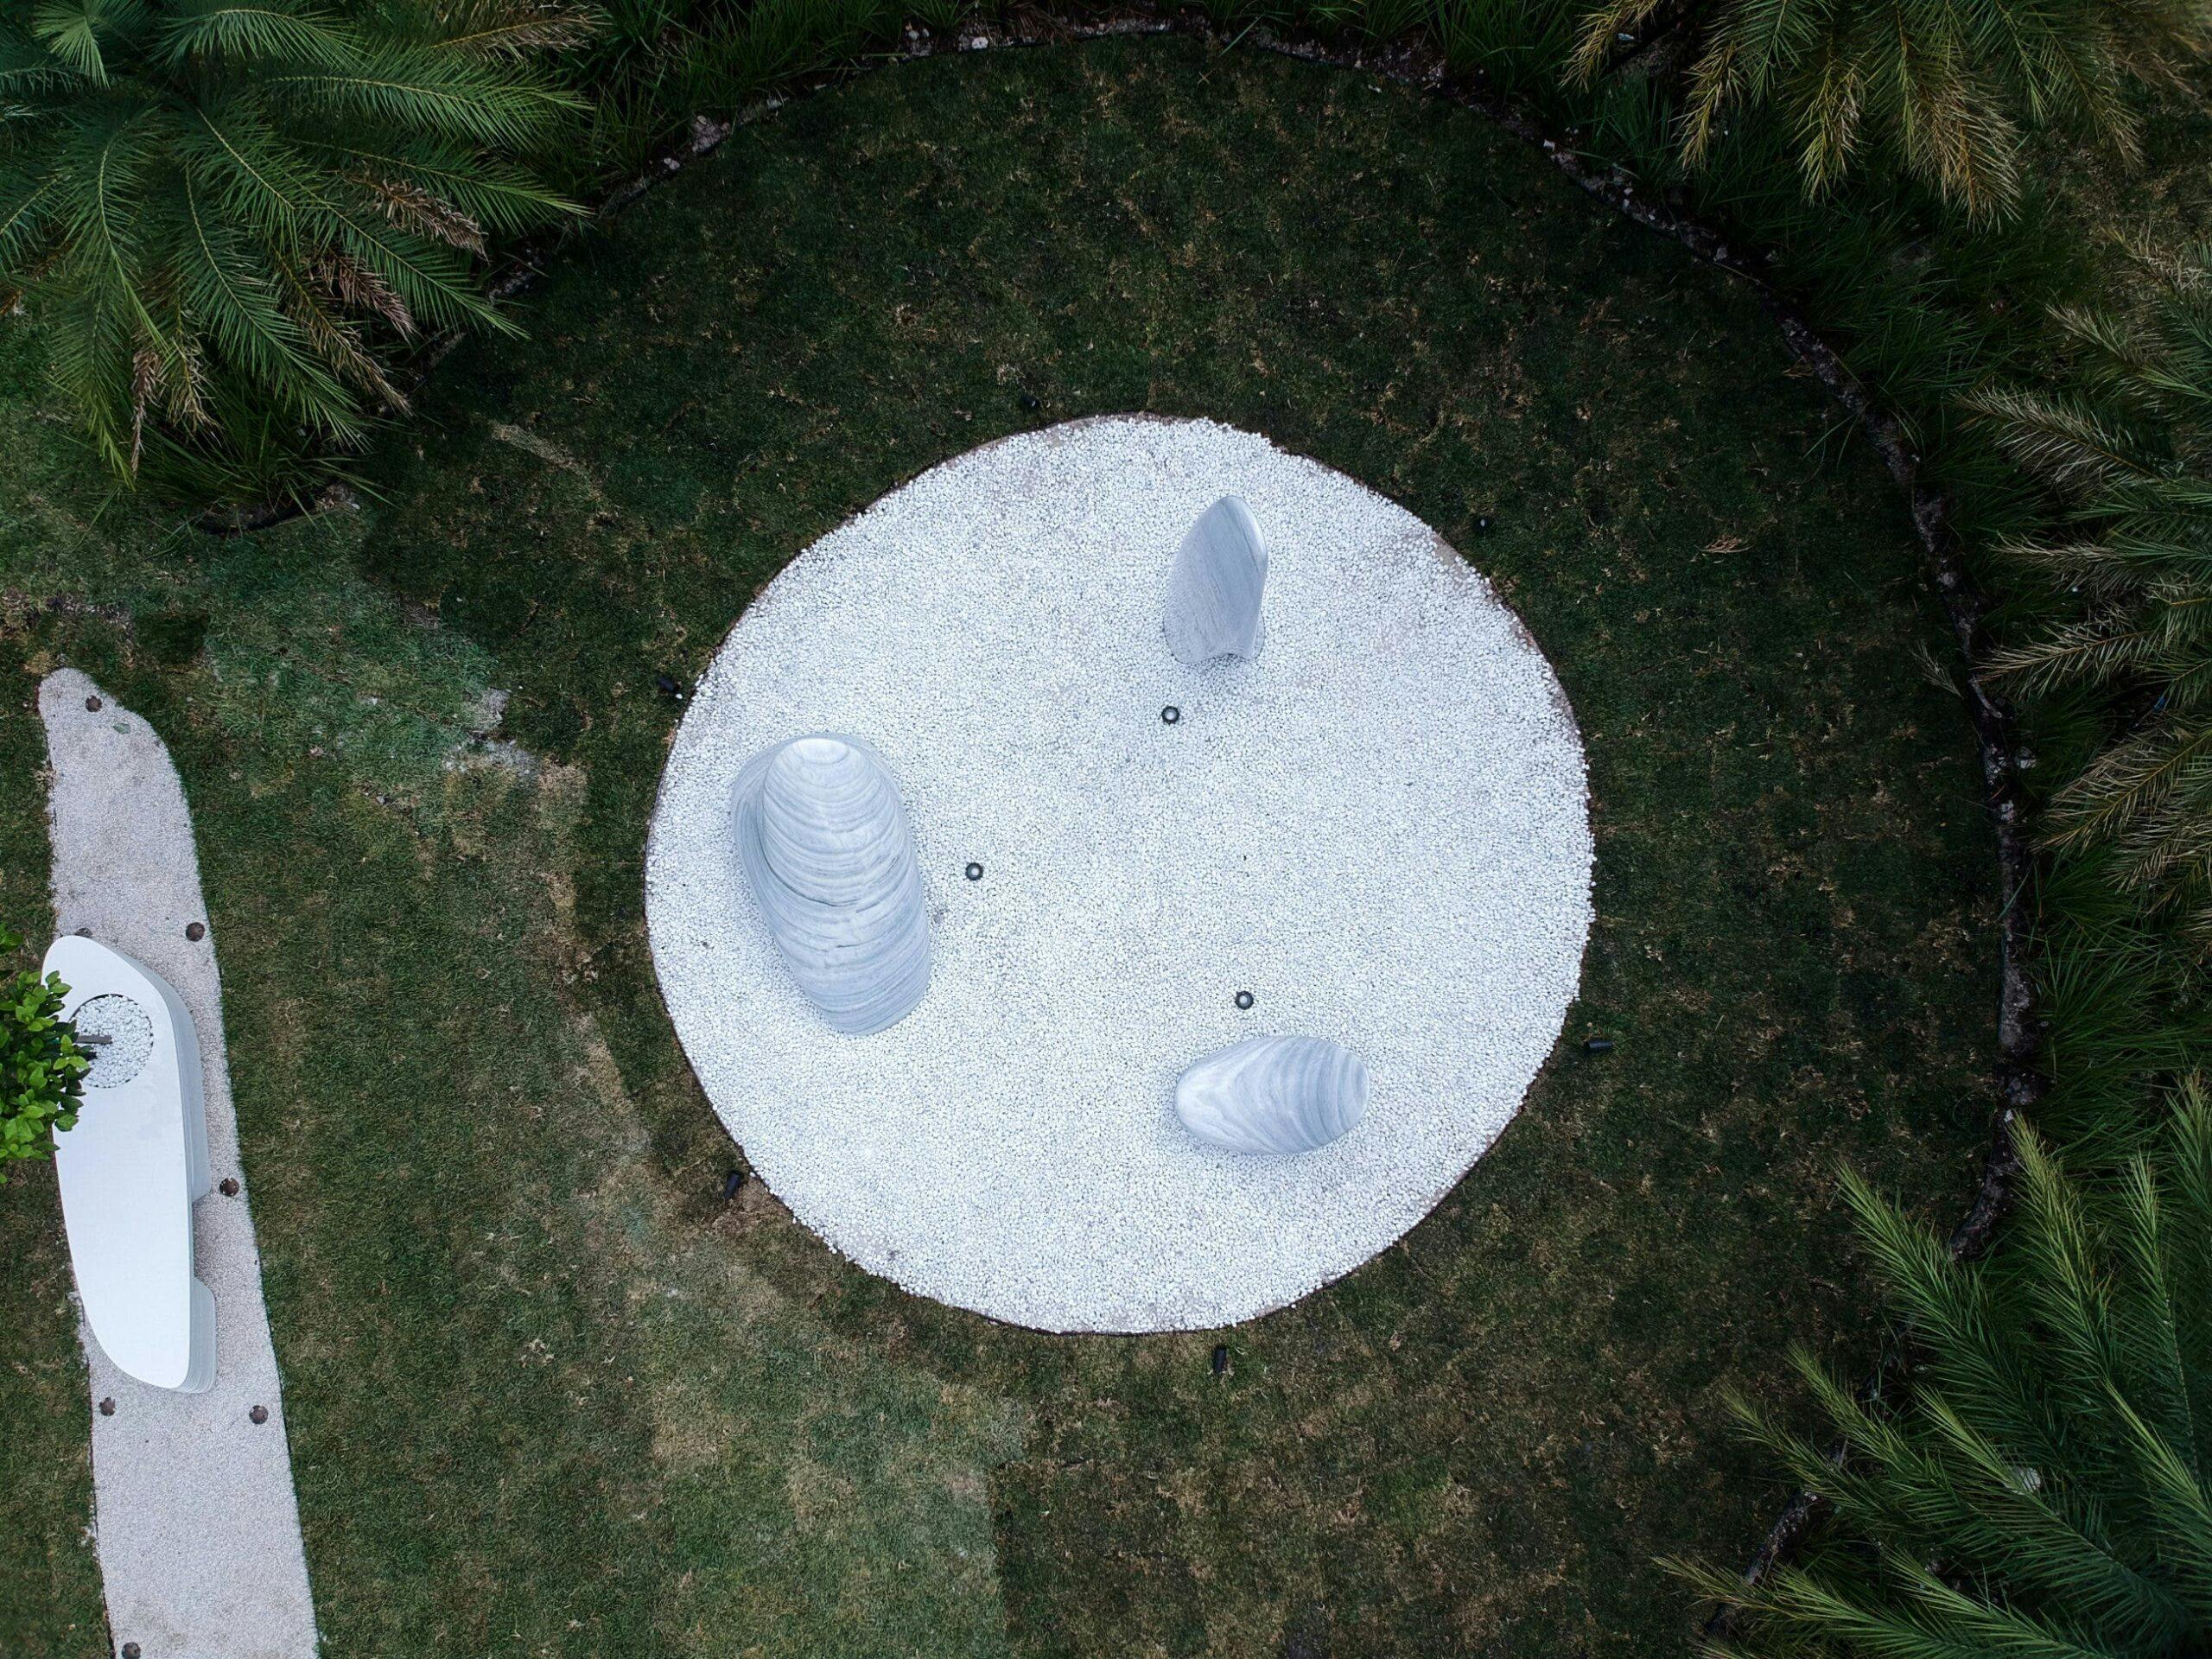 Image 34 of Speedforms in the Garden Pininfarina Cosentino Natural Stone and Dekton 6 1 scaled in "Speedforms in the Garden" by Cosentino and Pininfarina - Cosentino